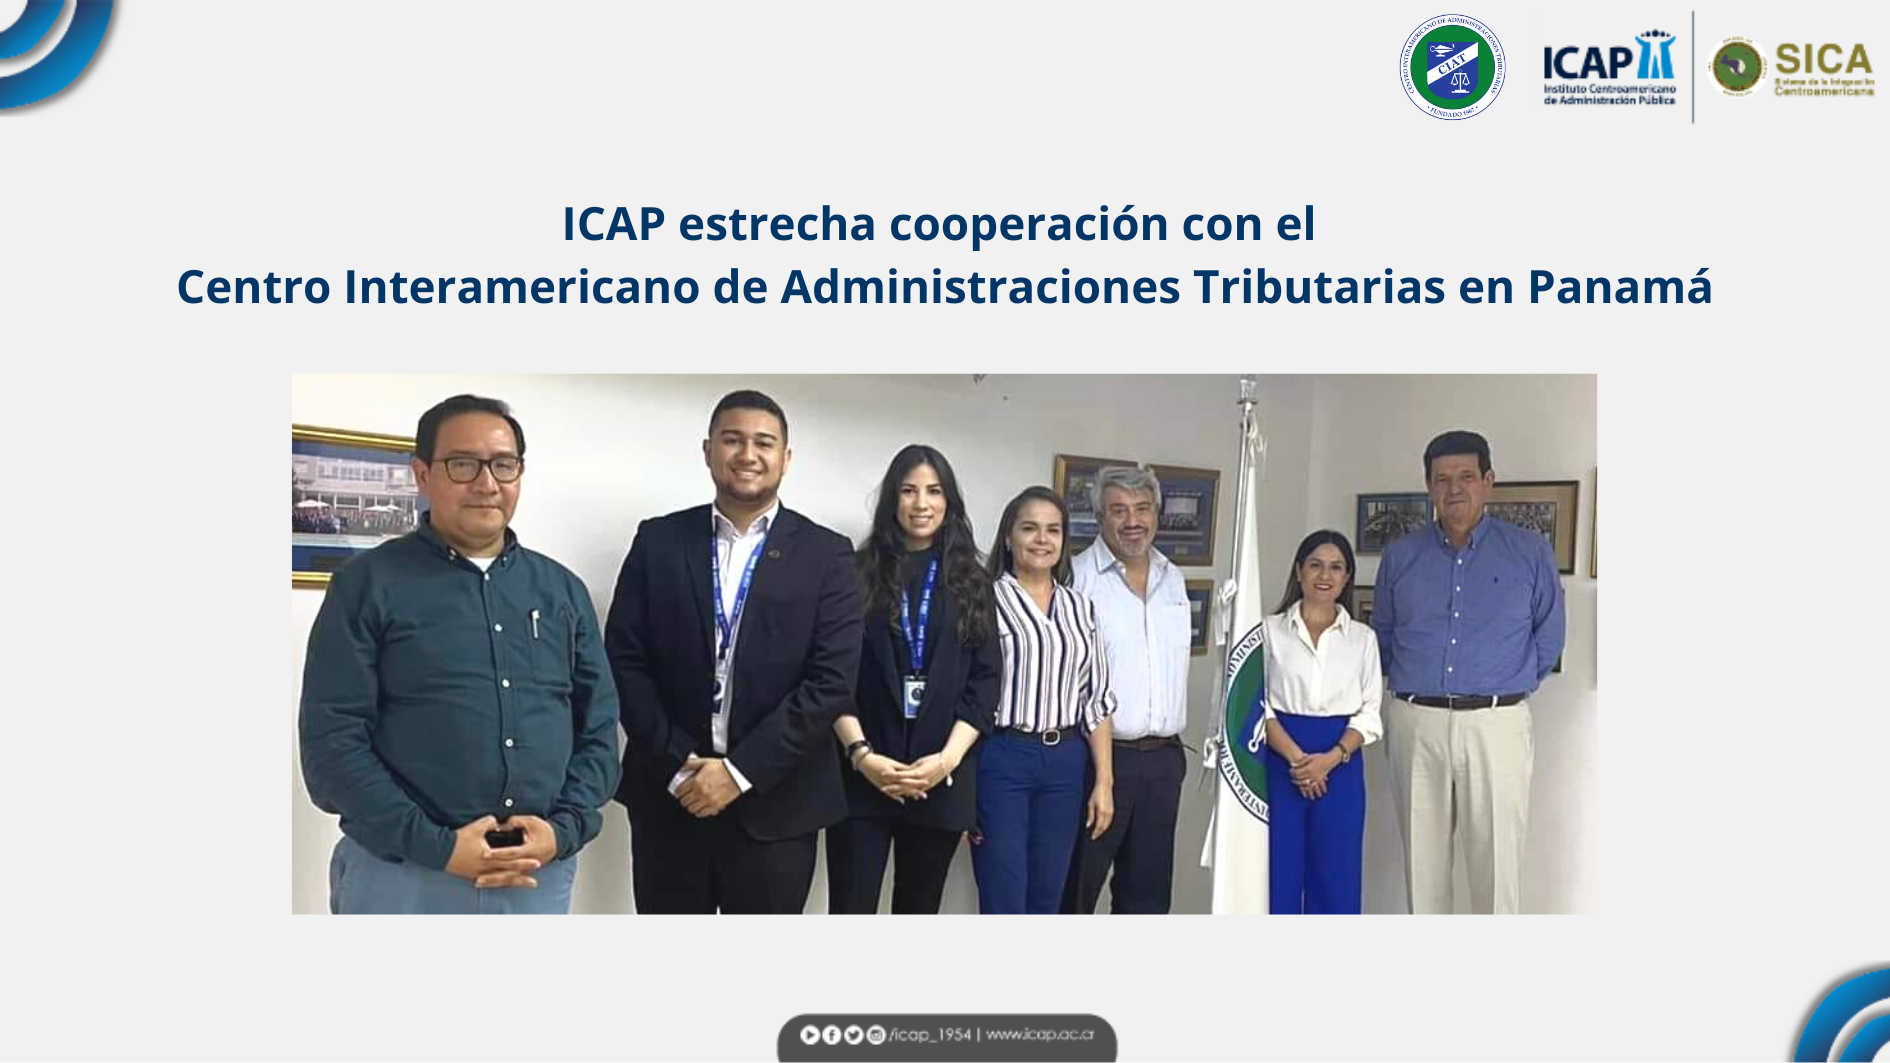 ICAP estrecha cooperación con el Centro Interamericano de Administraciones Tributarias en Panamá